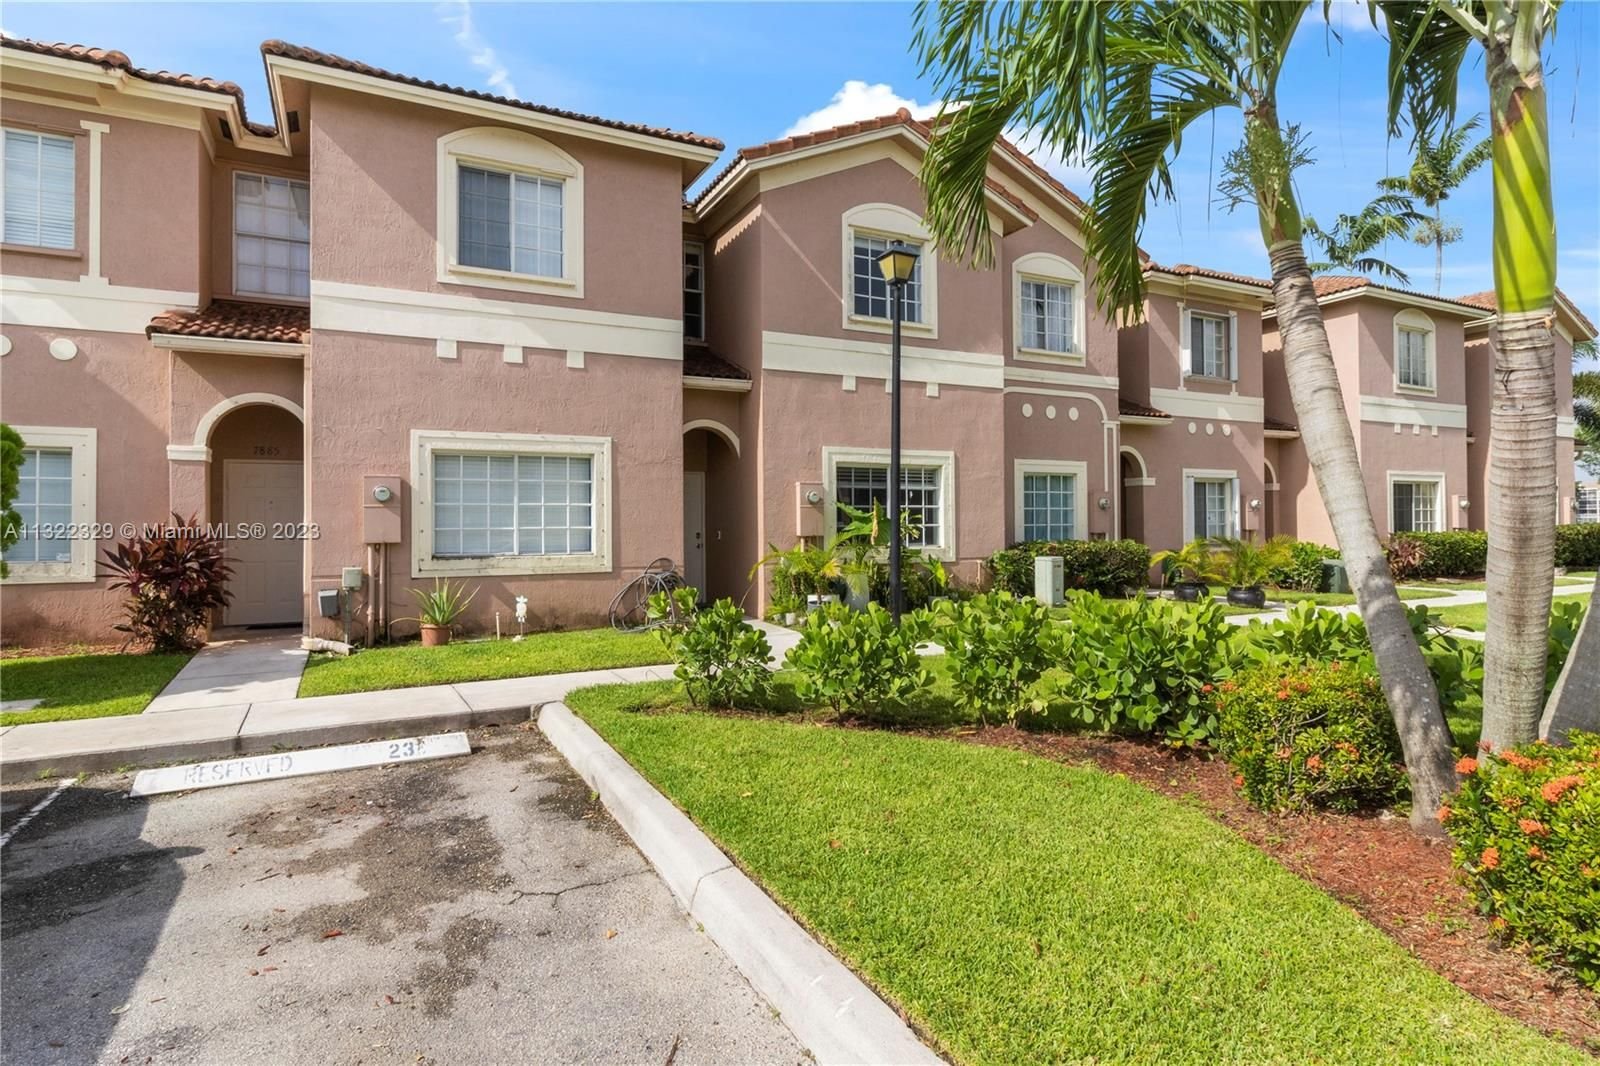 Real estate property located at 7887 Catalina Cir #7887, Broward County, Tamarac, FL